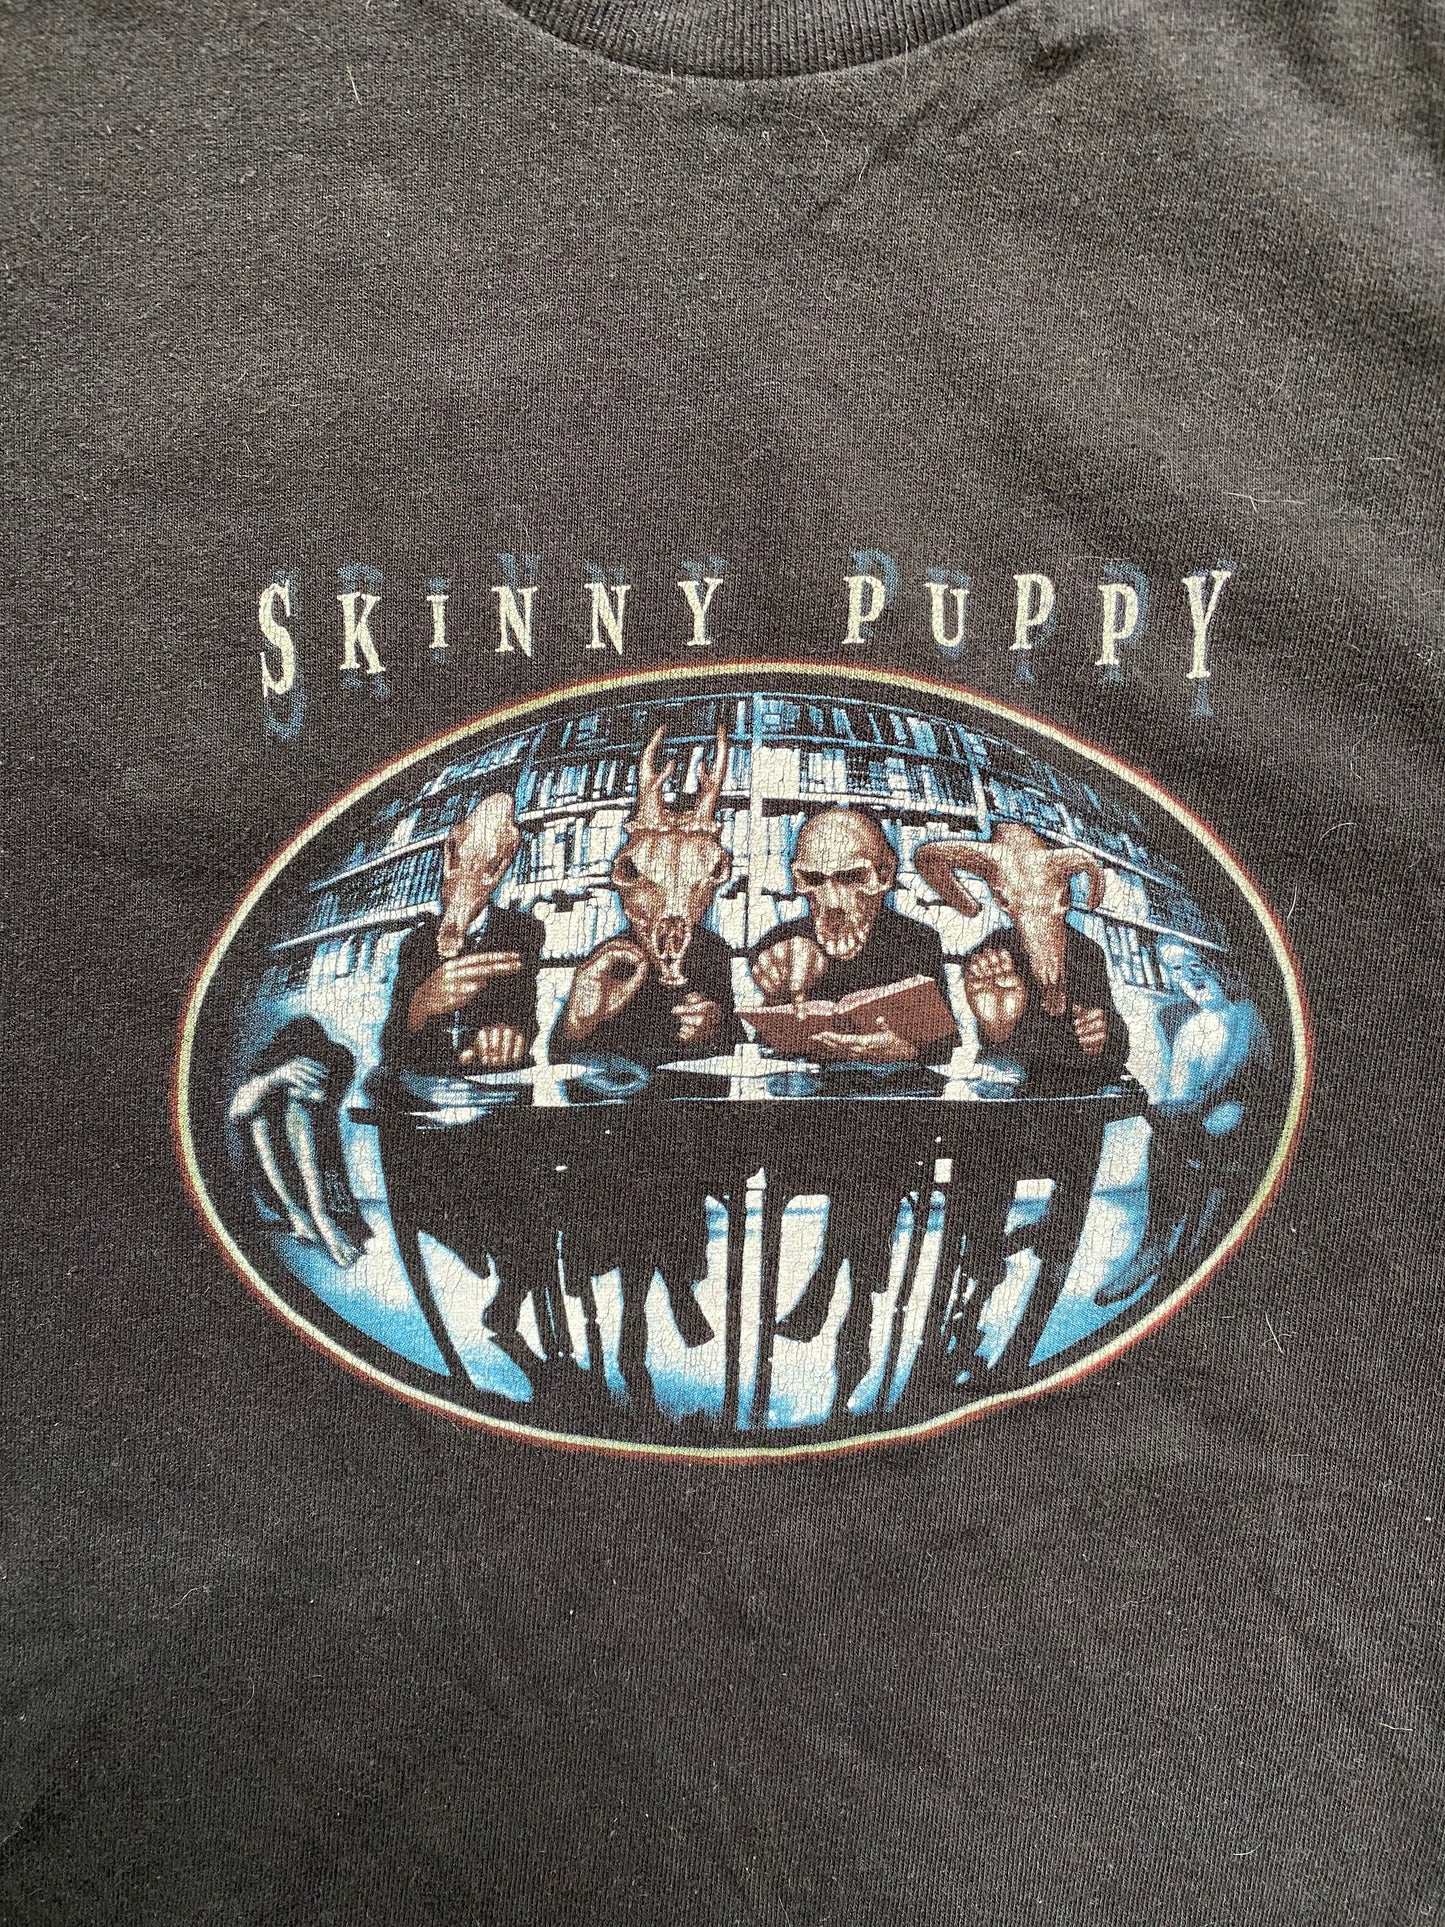 Vintage 99’ Skinny Puppy Shirt